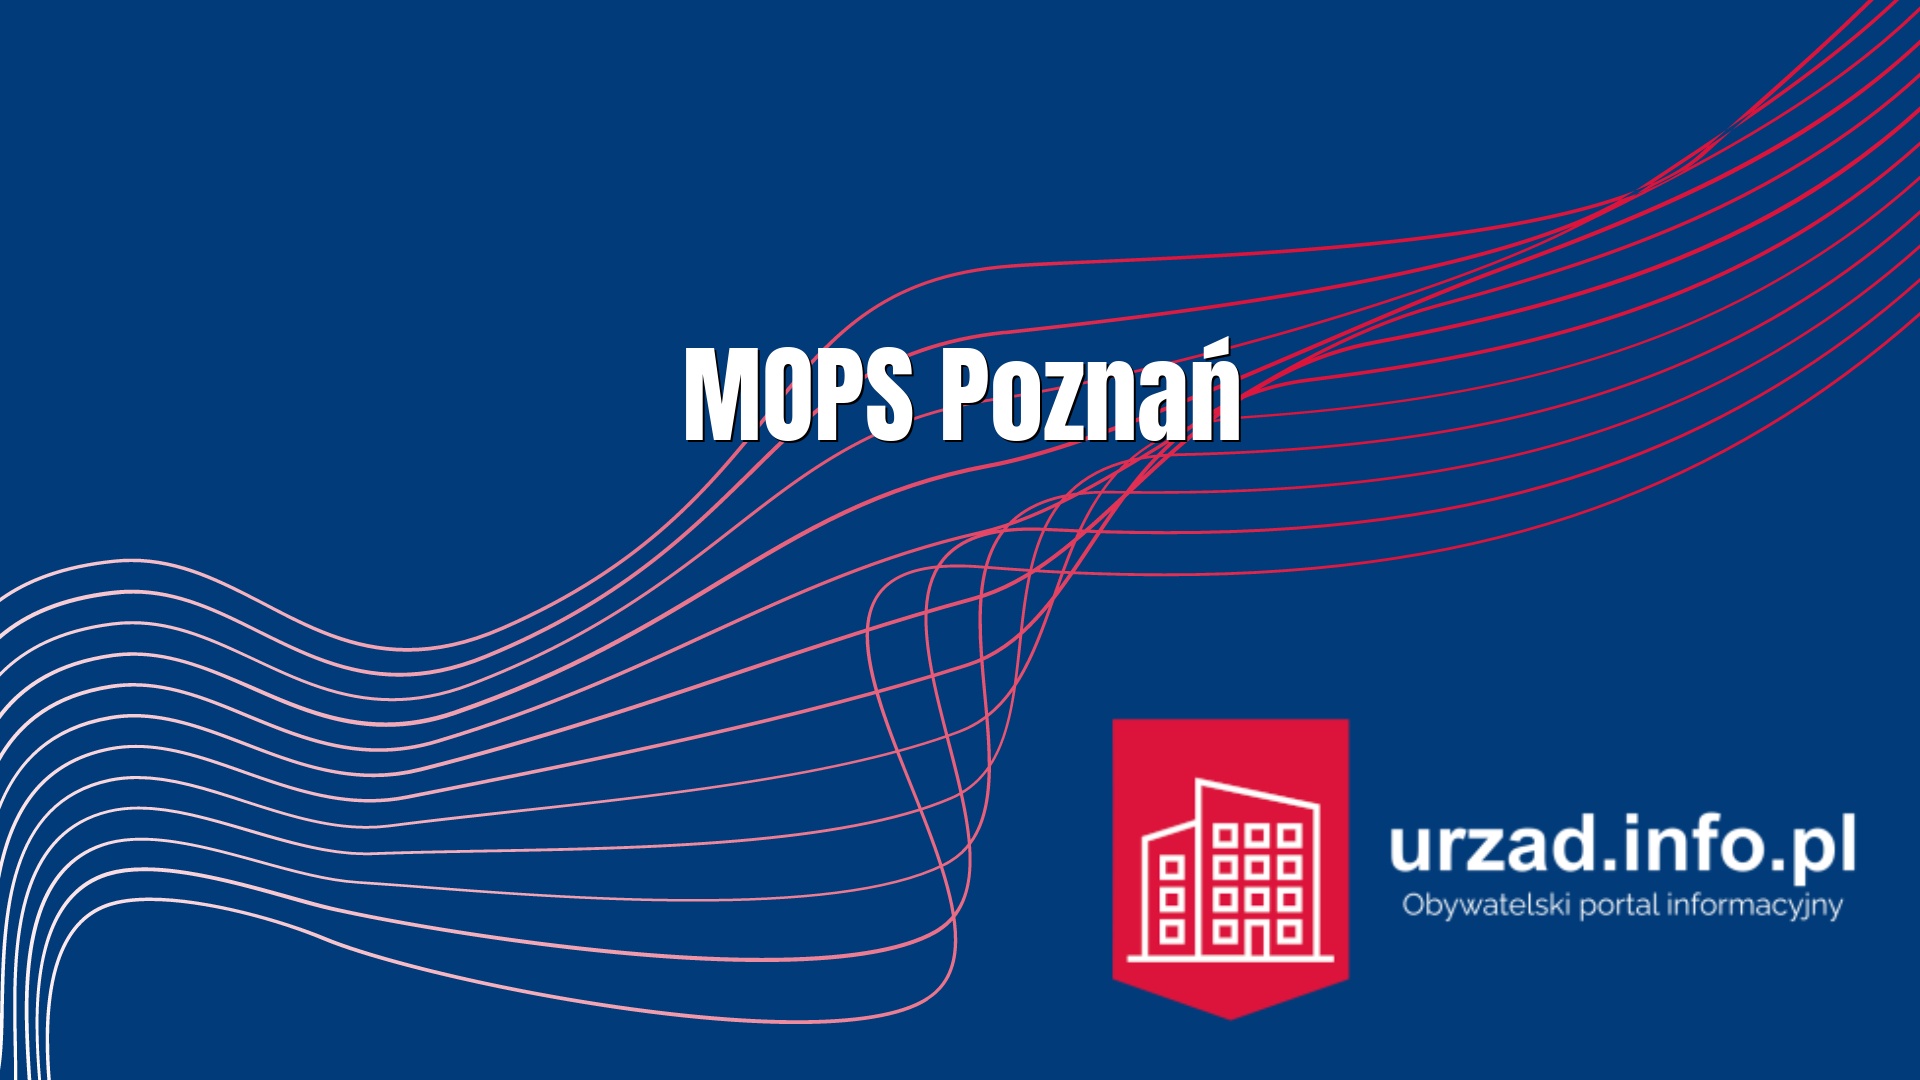 MOPS Poznań - Miejski Ośrodek Pomocy Społecznej w Poznaniu